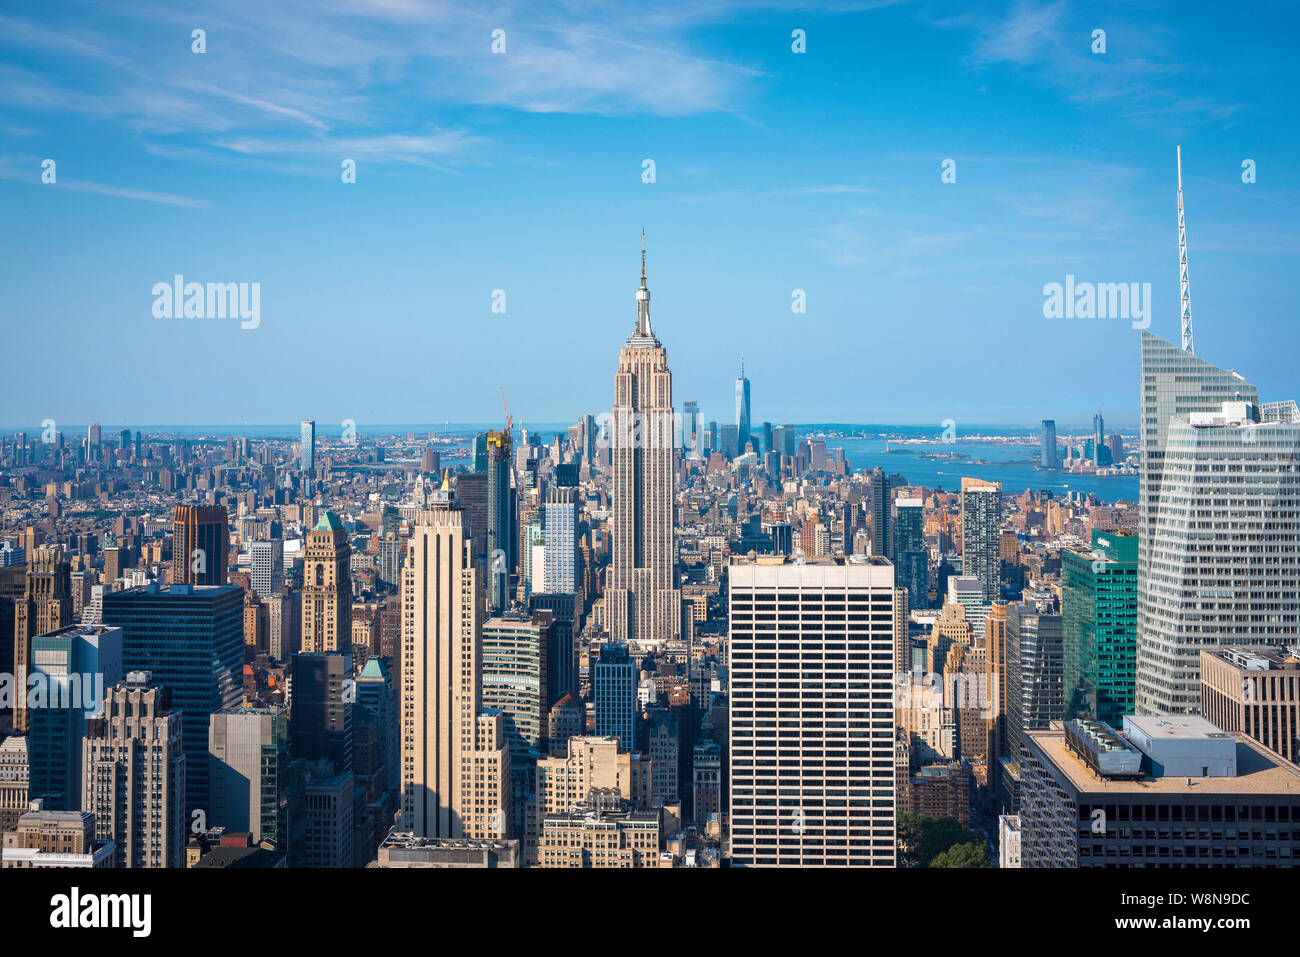 New York vue classique et emblématique en été sur la ville de Midtown Manhattan avec l'Empire State Building situé au centre, New York City, États-Unis Banque D'Images